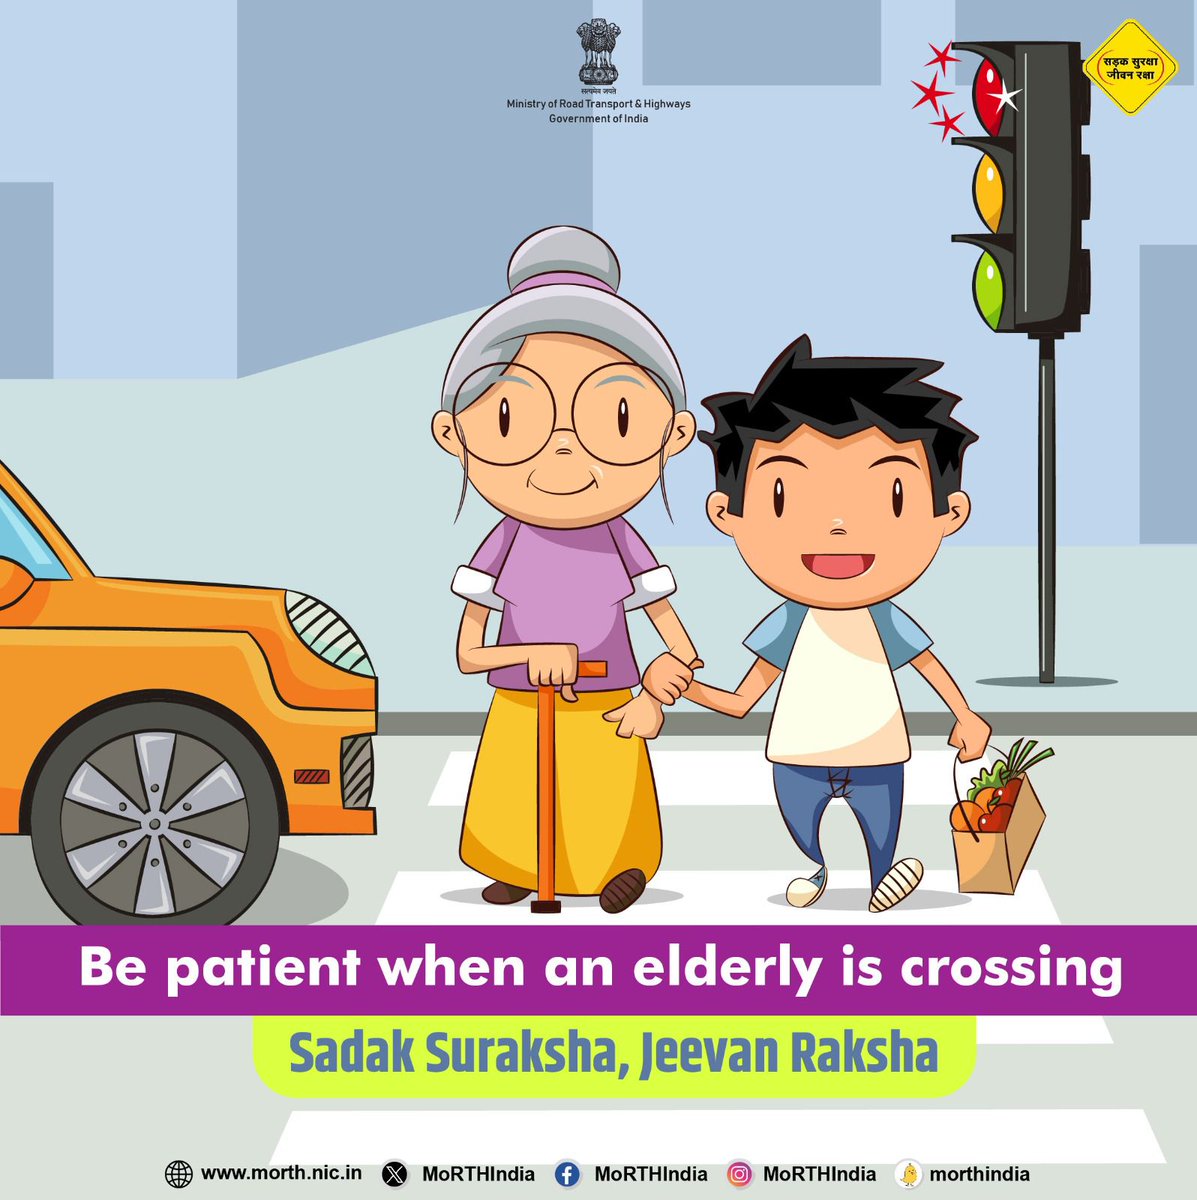 Be patient! #SadakSurakshaJeevanRaksha #DriveResponsibly